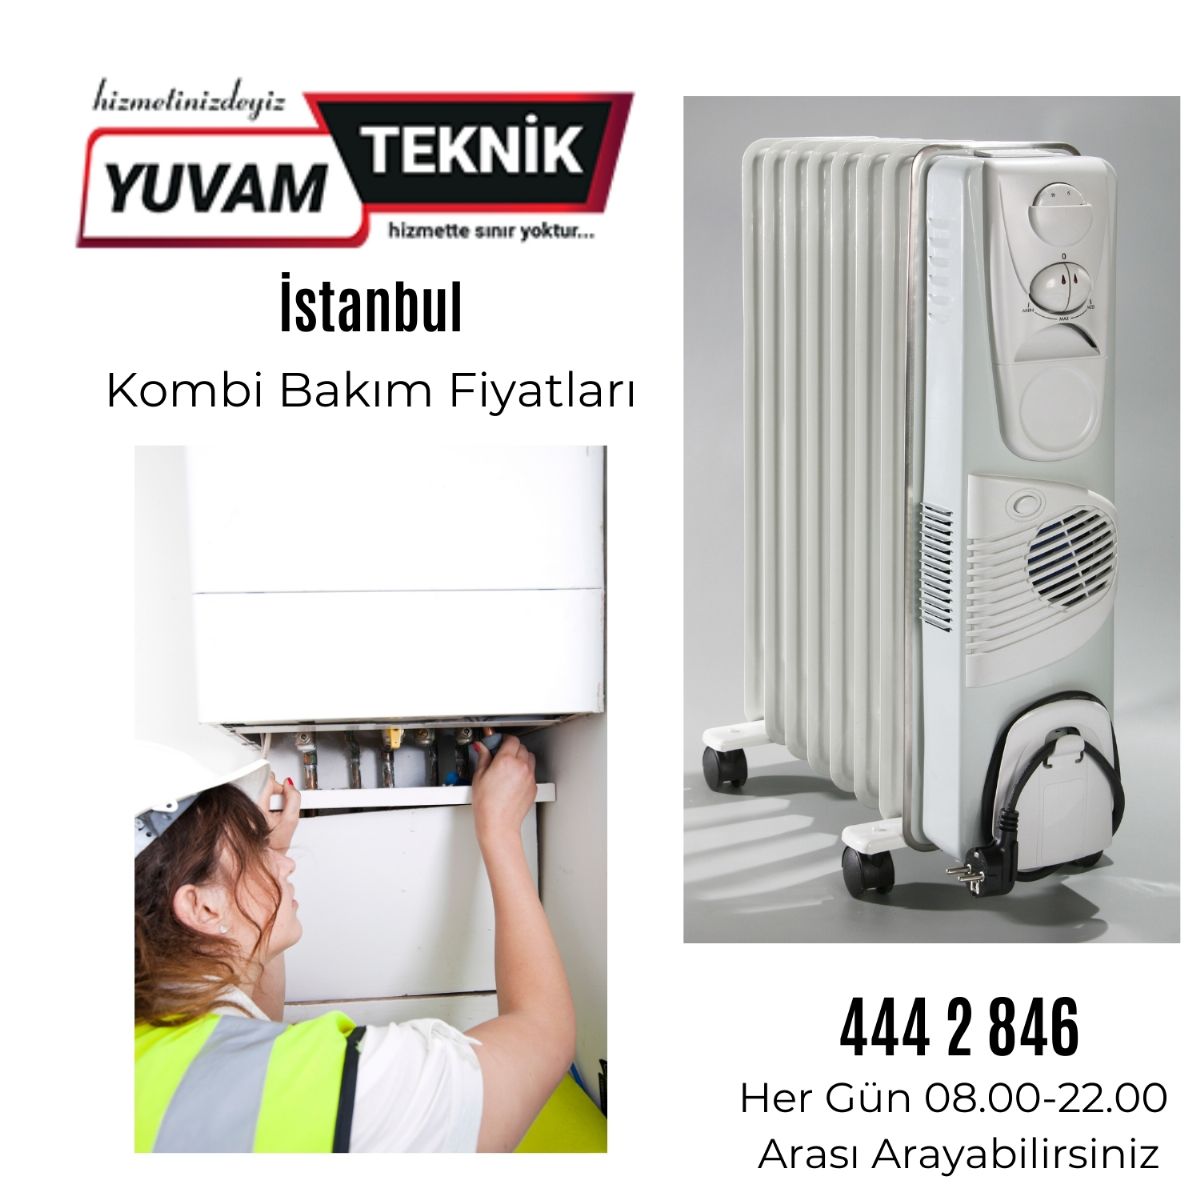 İstanbul kombi bakım fiyatları 444 2 846